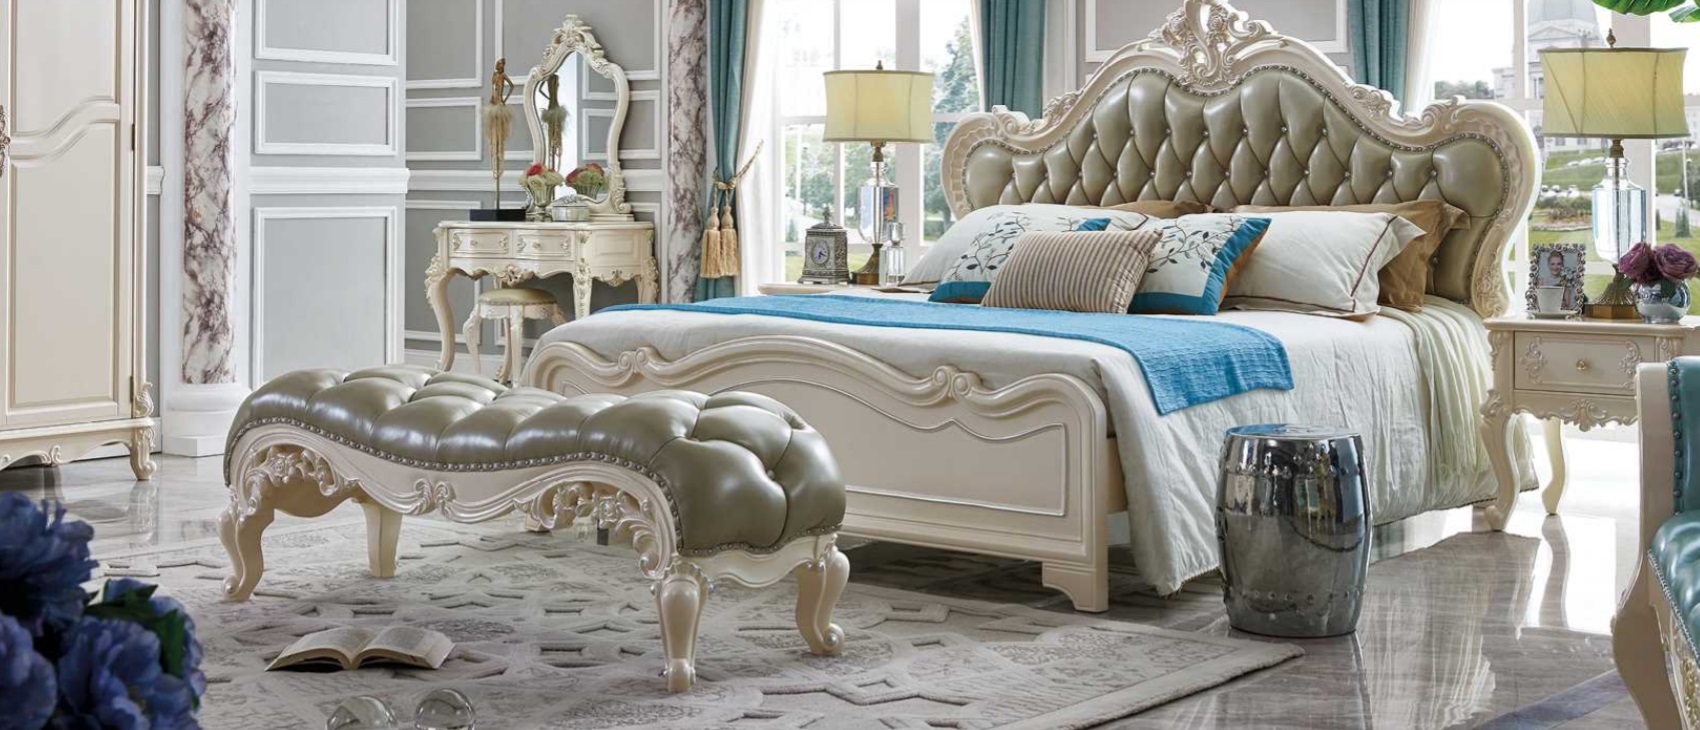 Klassisches Luxus Chesterfield Bett Leder Schlafzimmer Hotel Barock Möbel Betten